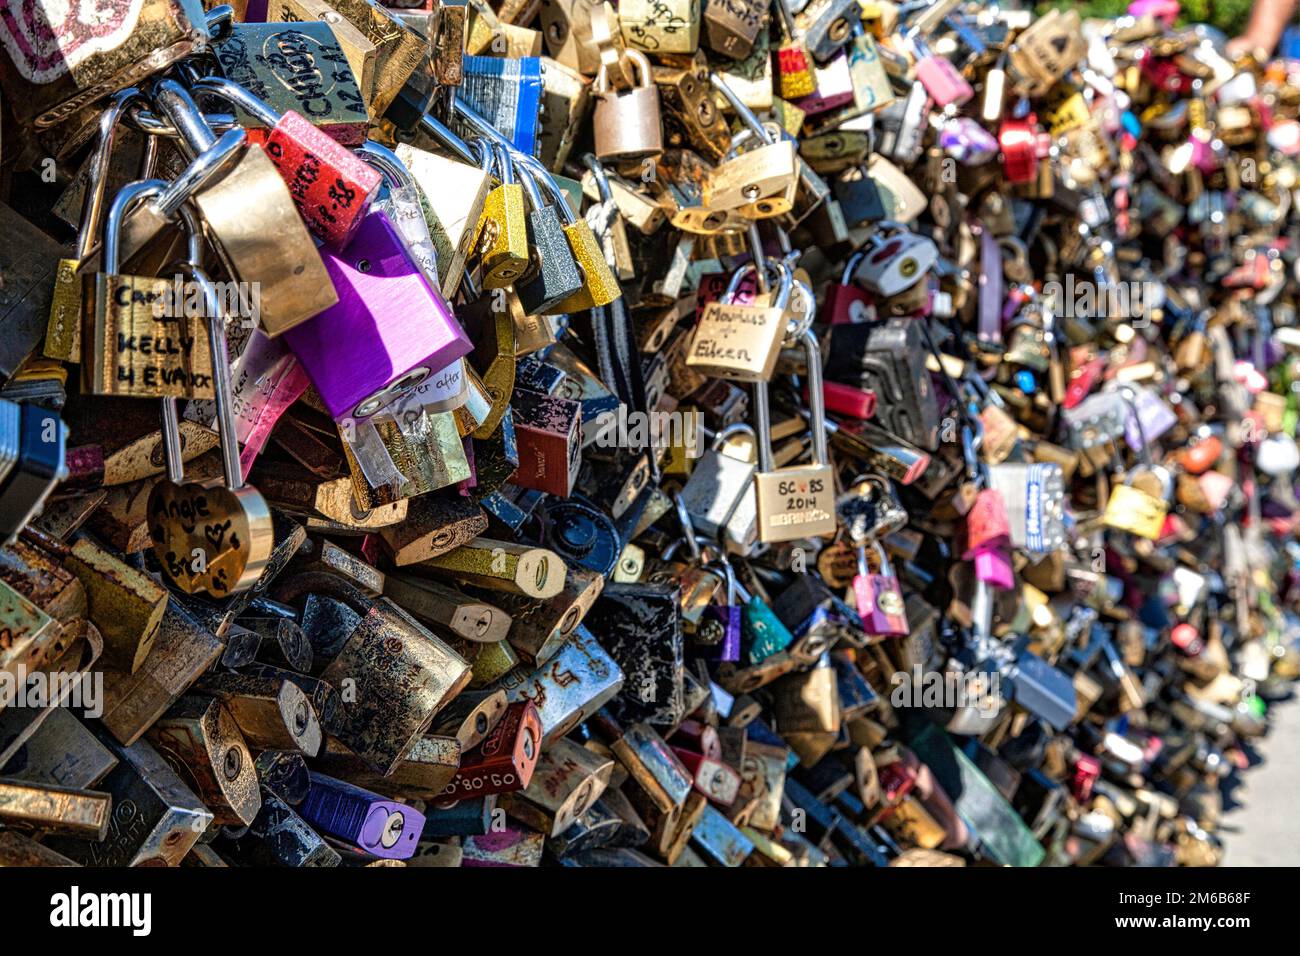 Tausende von Schleusen hängen an der Brücke Pont des Arts über die seine, was Glück und Liebessymbole bringt. Paris, Frankreich. Stockfoto